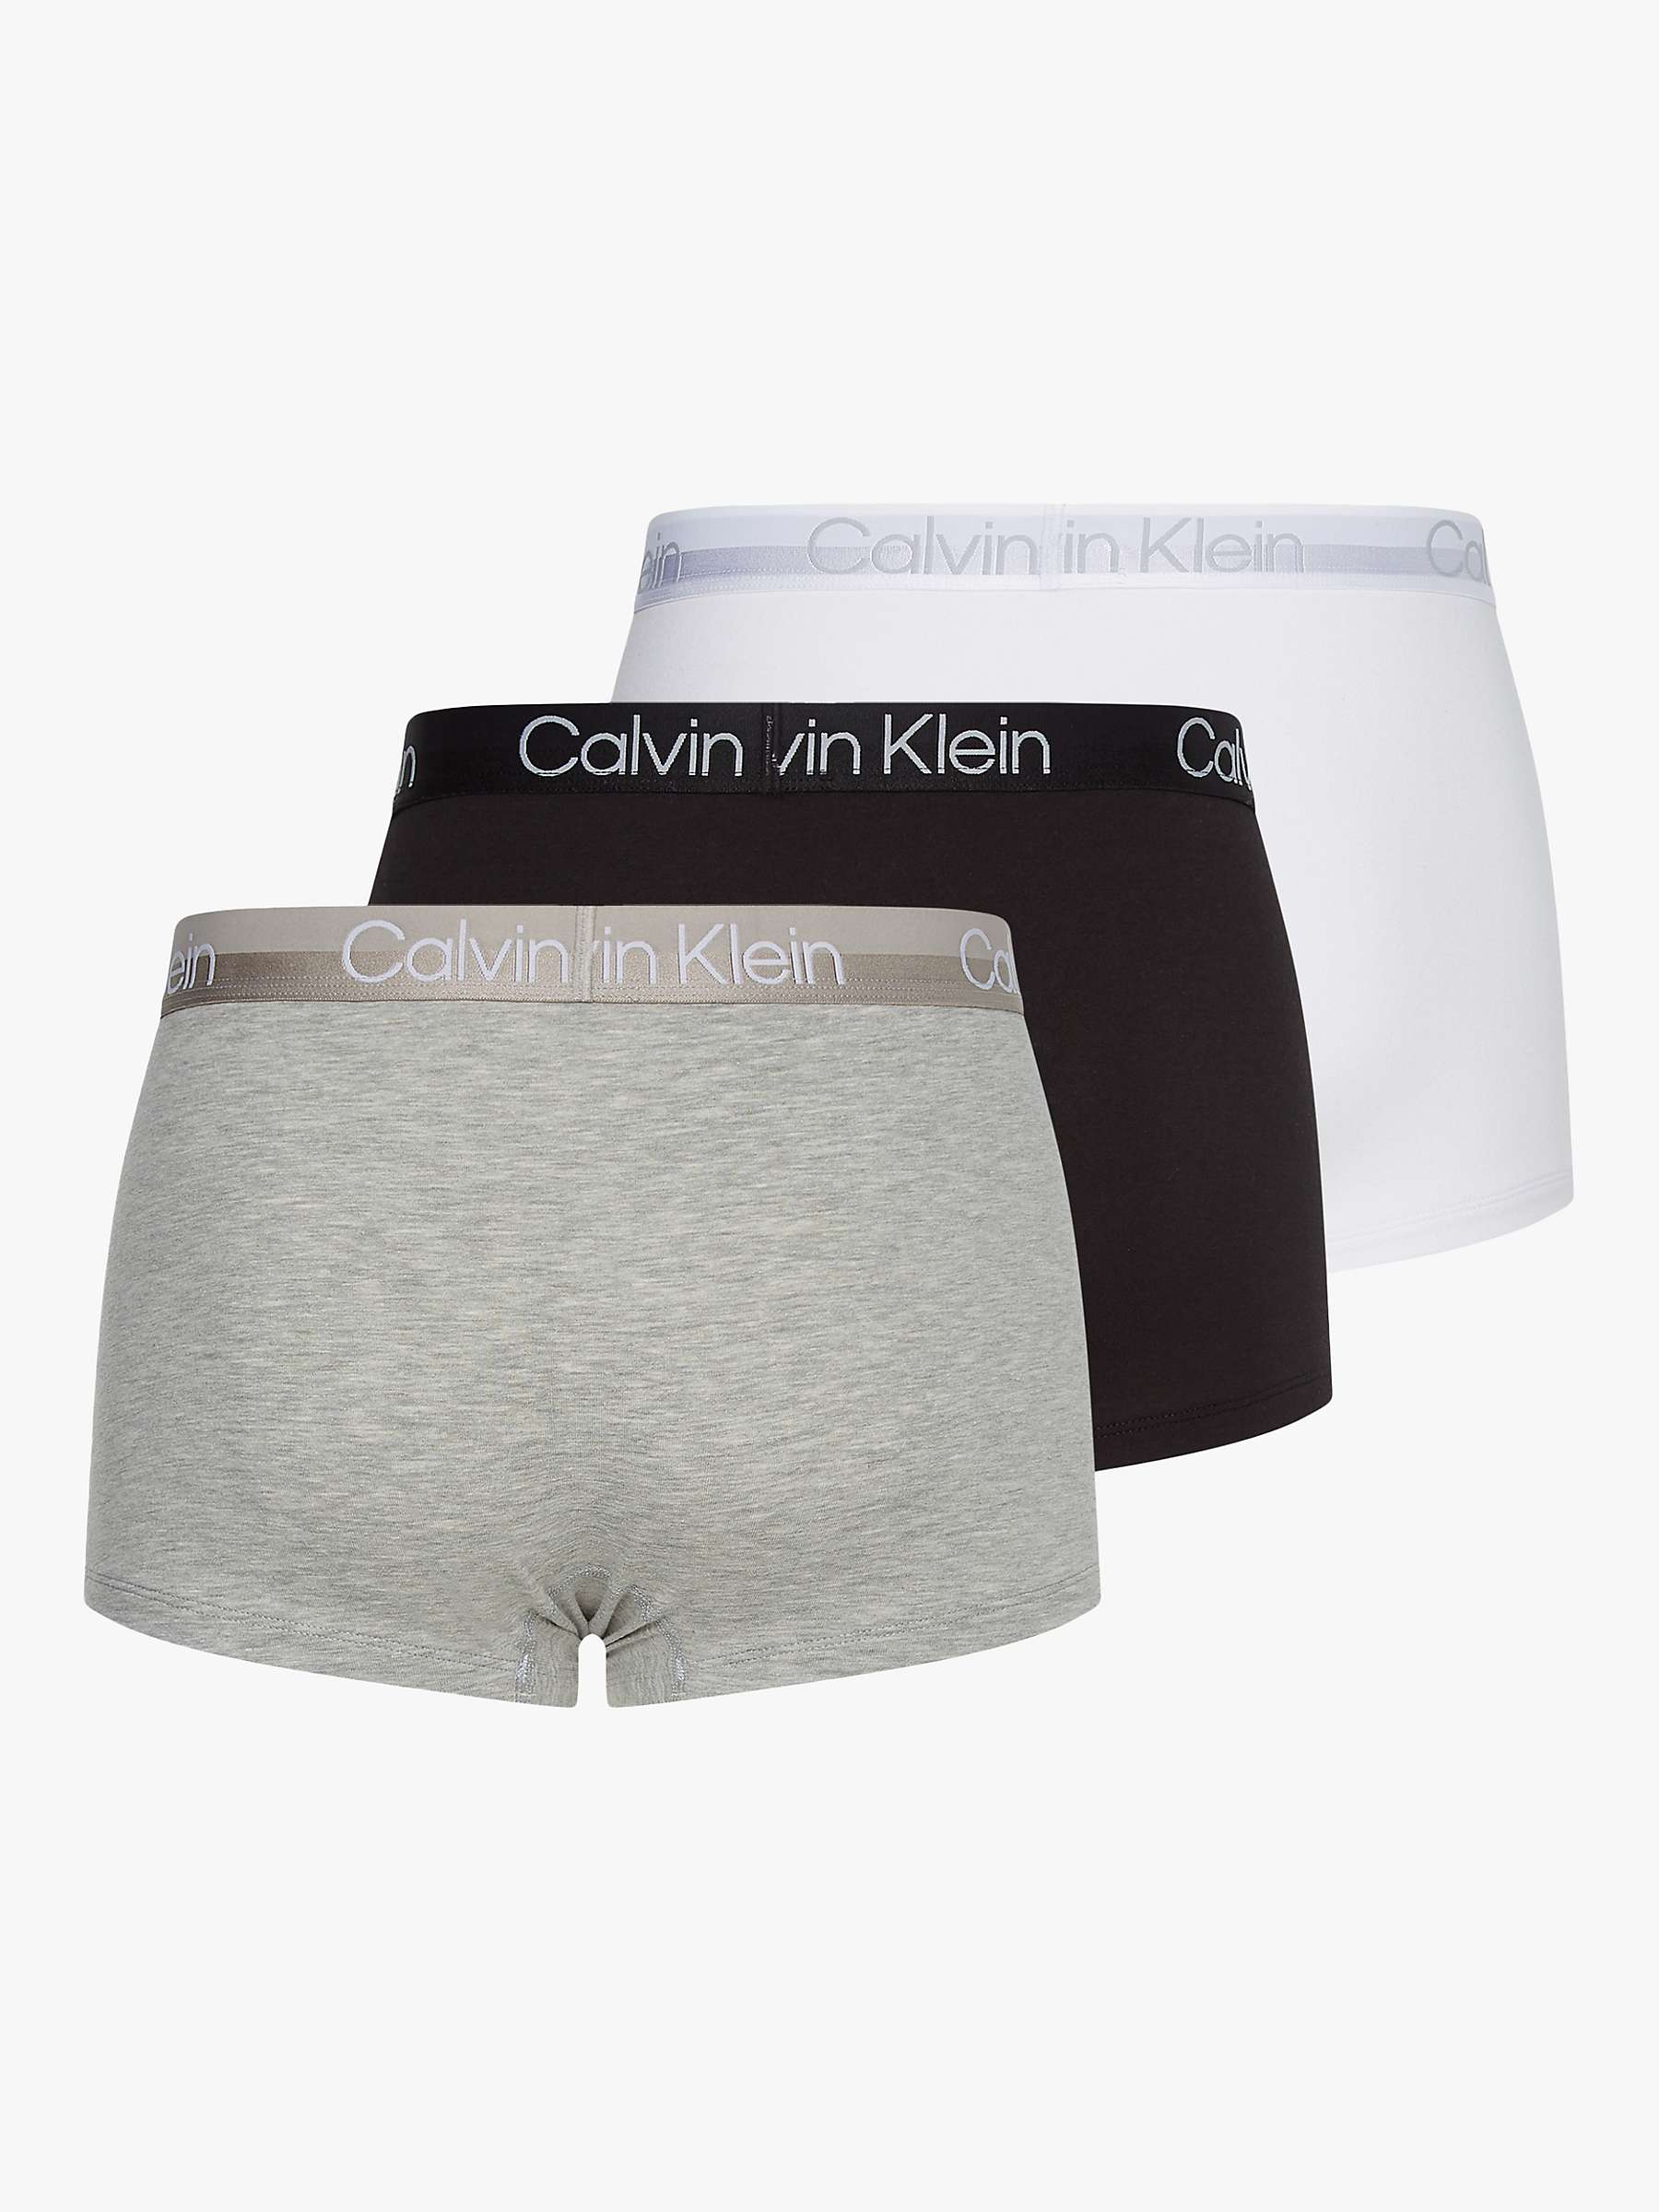 Buy Calvin Klein Plain Logo Trunks, Pack of 3, Multi Online at johnlewis.com